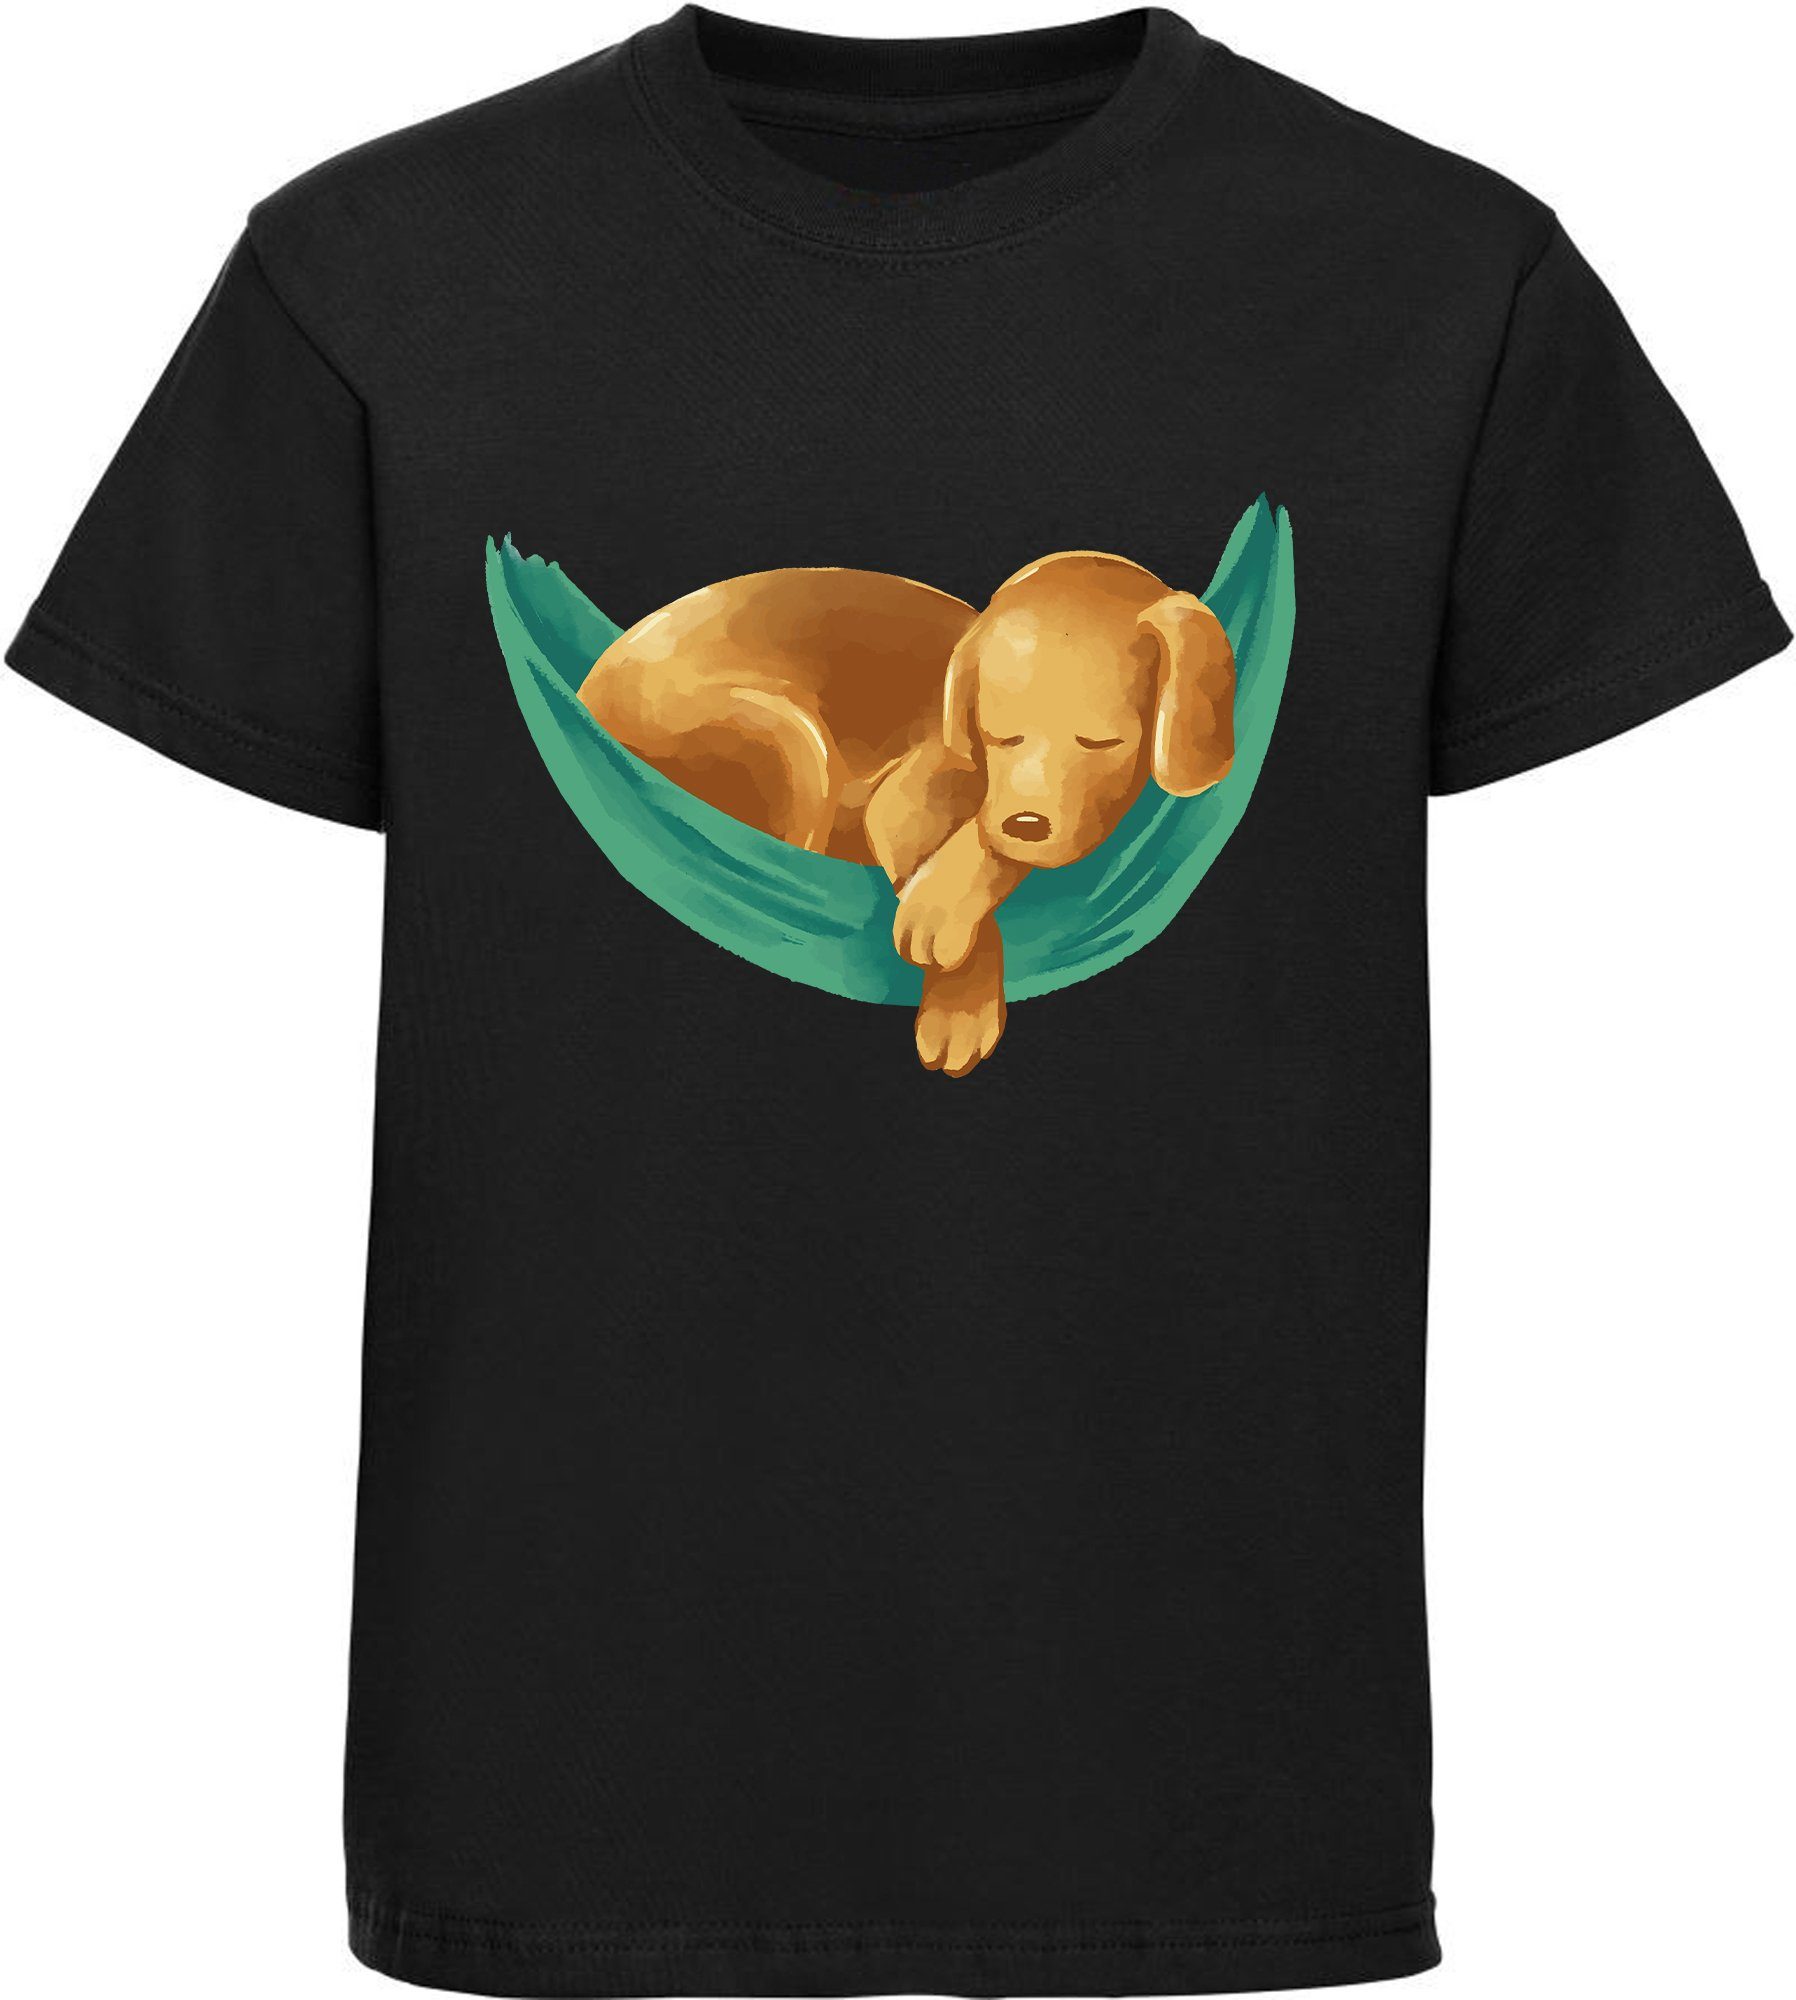 MyDesign24 T-Shirt Kinder Hunde Print Shirt bedruckt - Labrador Welpe in Hängematte Baumwollshirt mit Aufdruck, i245 schwarz